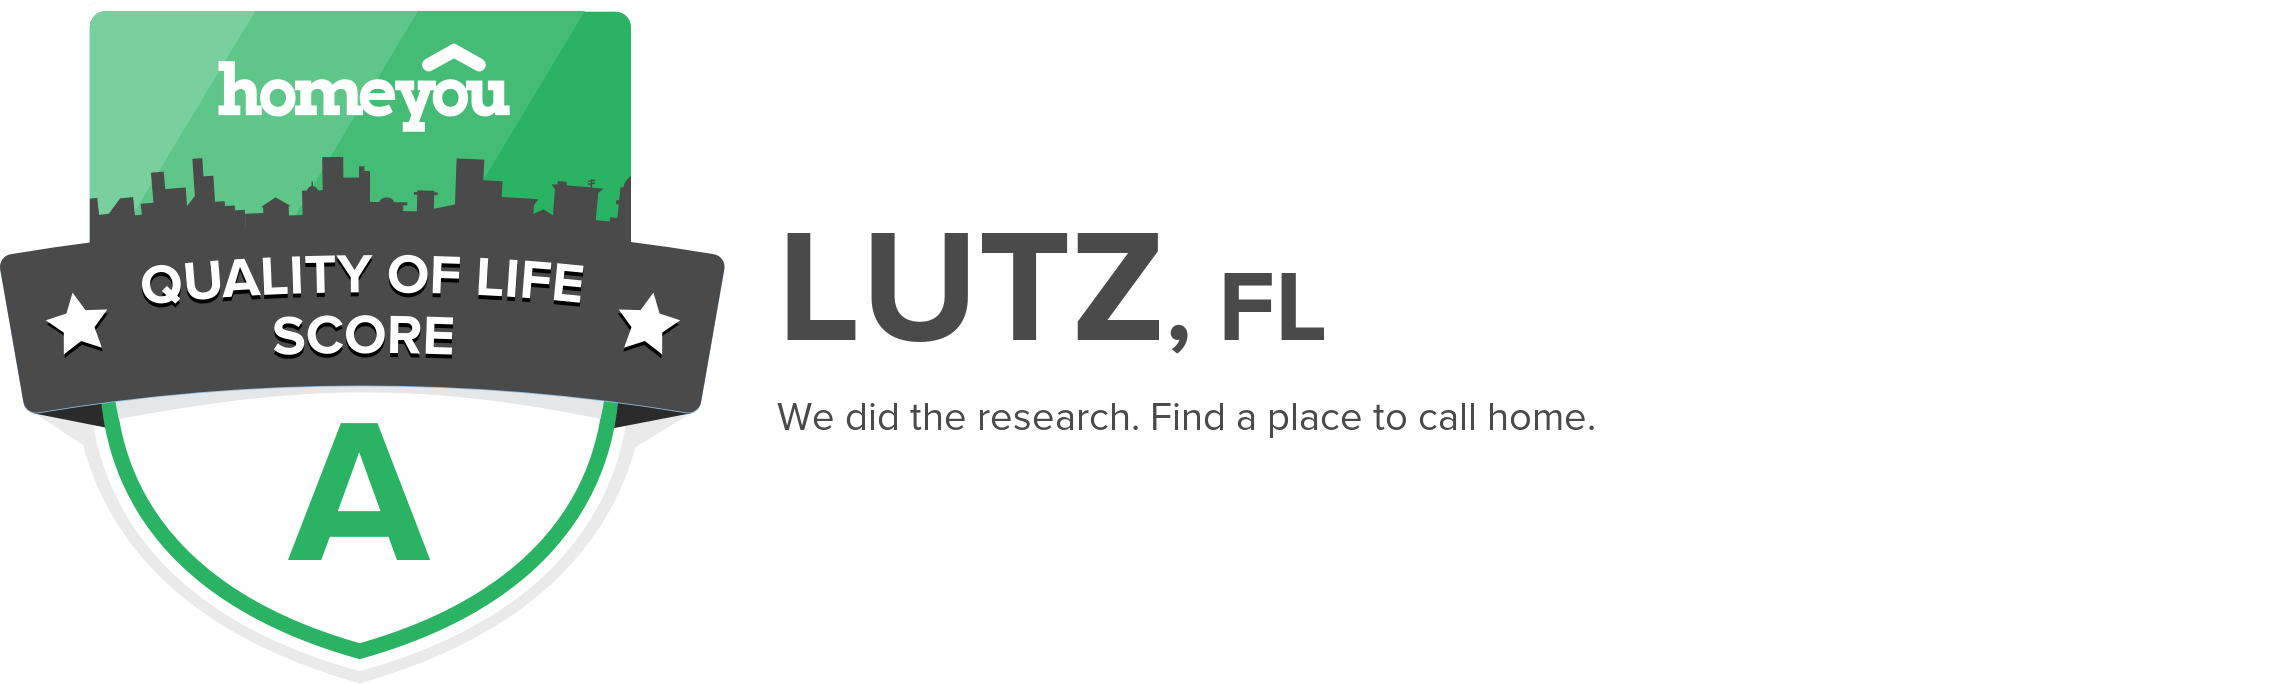 Lutz, FL